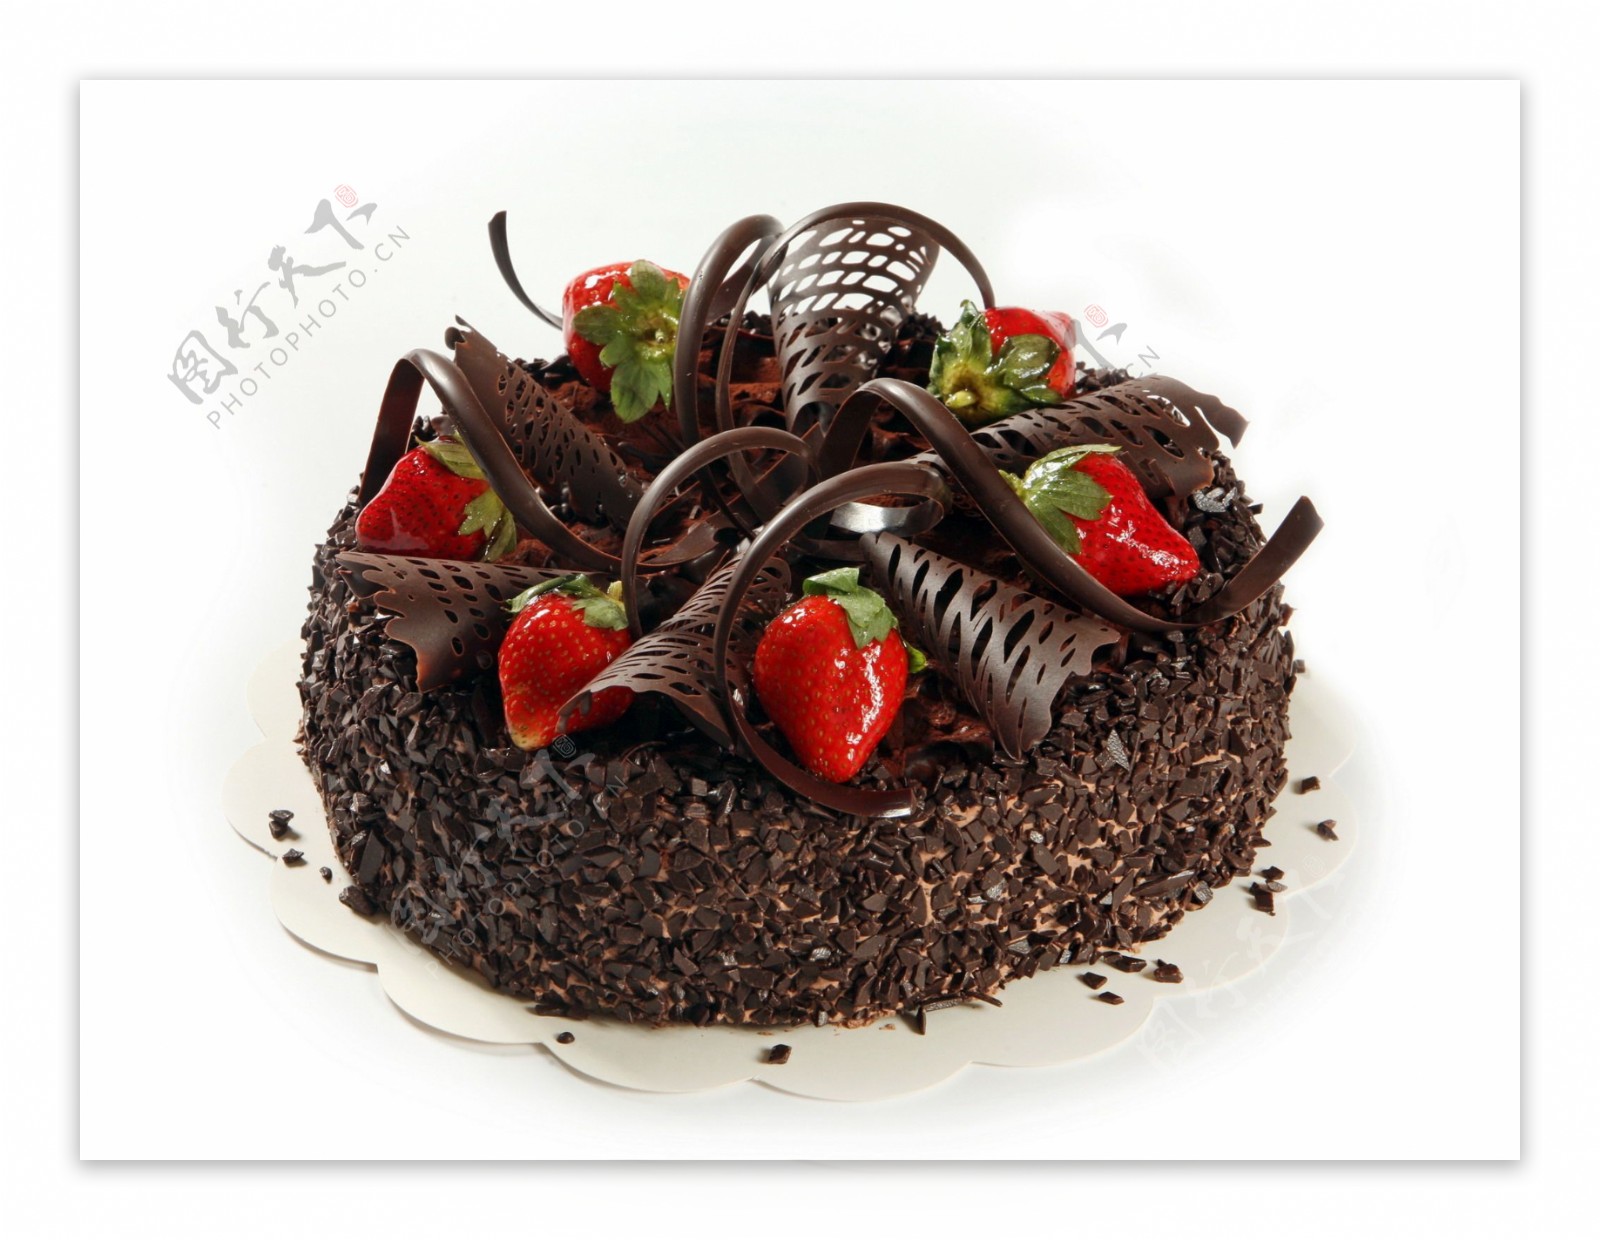 巧克力黑森林蛋糕